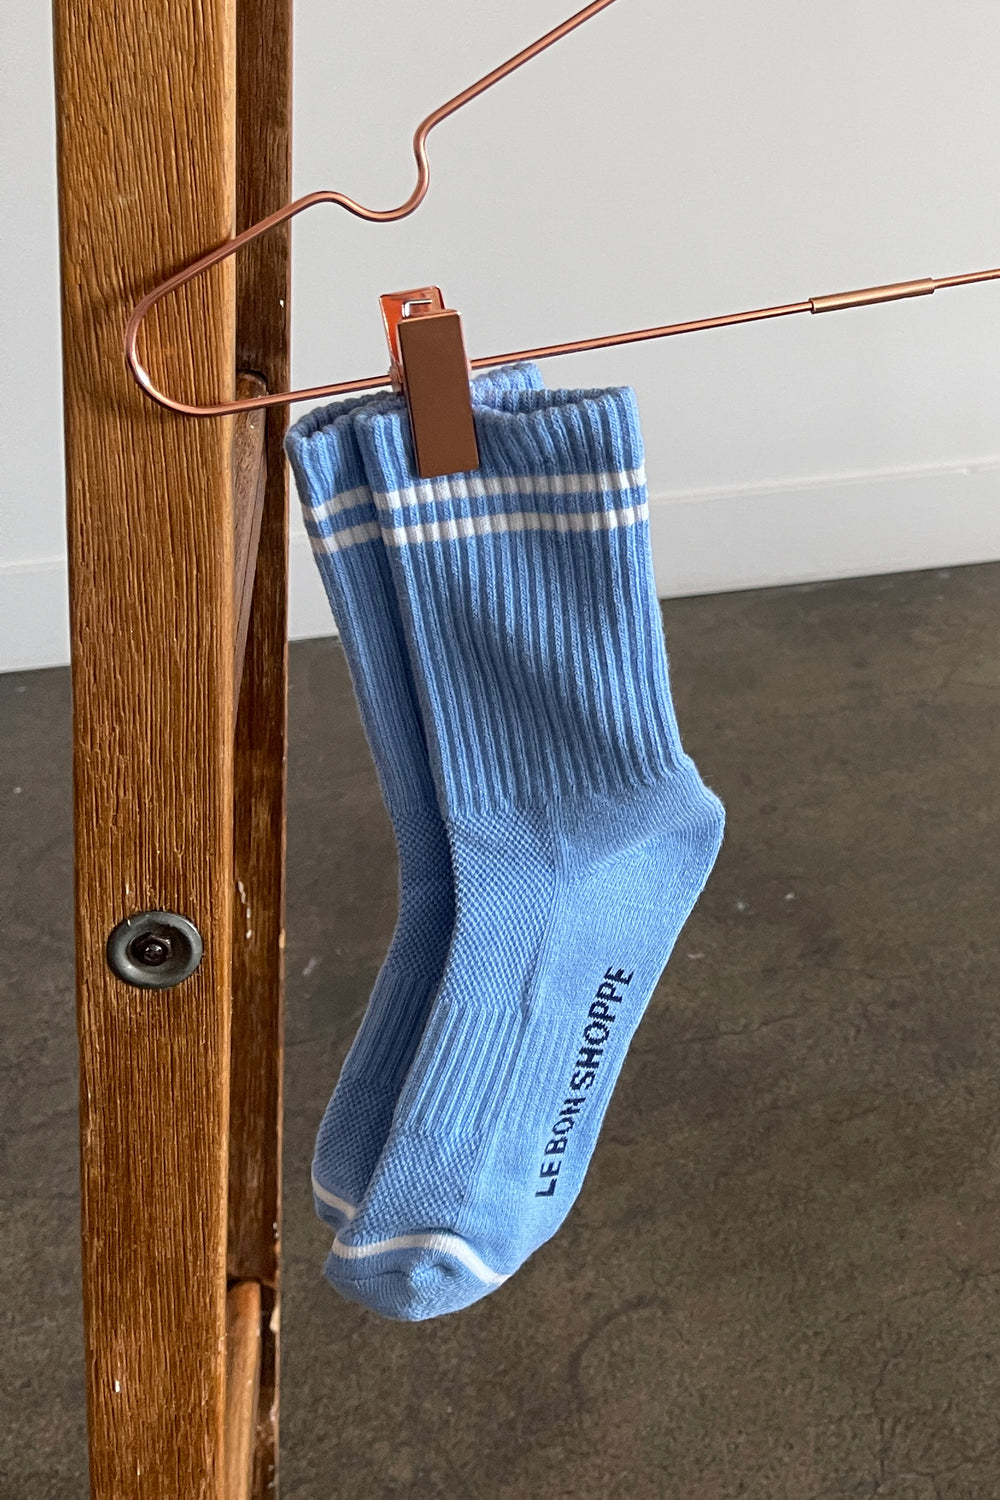 Boyfriend socks - French blue